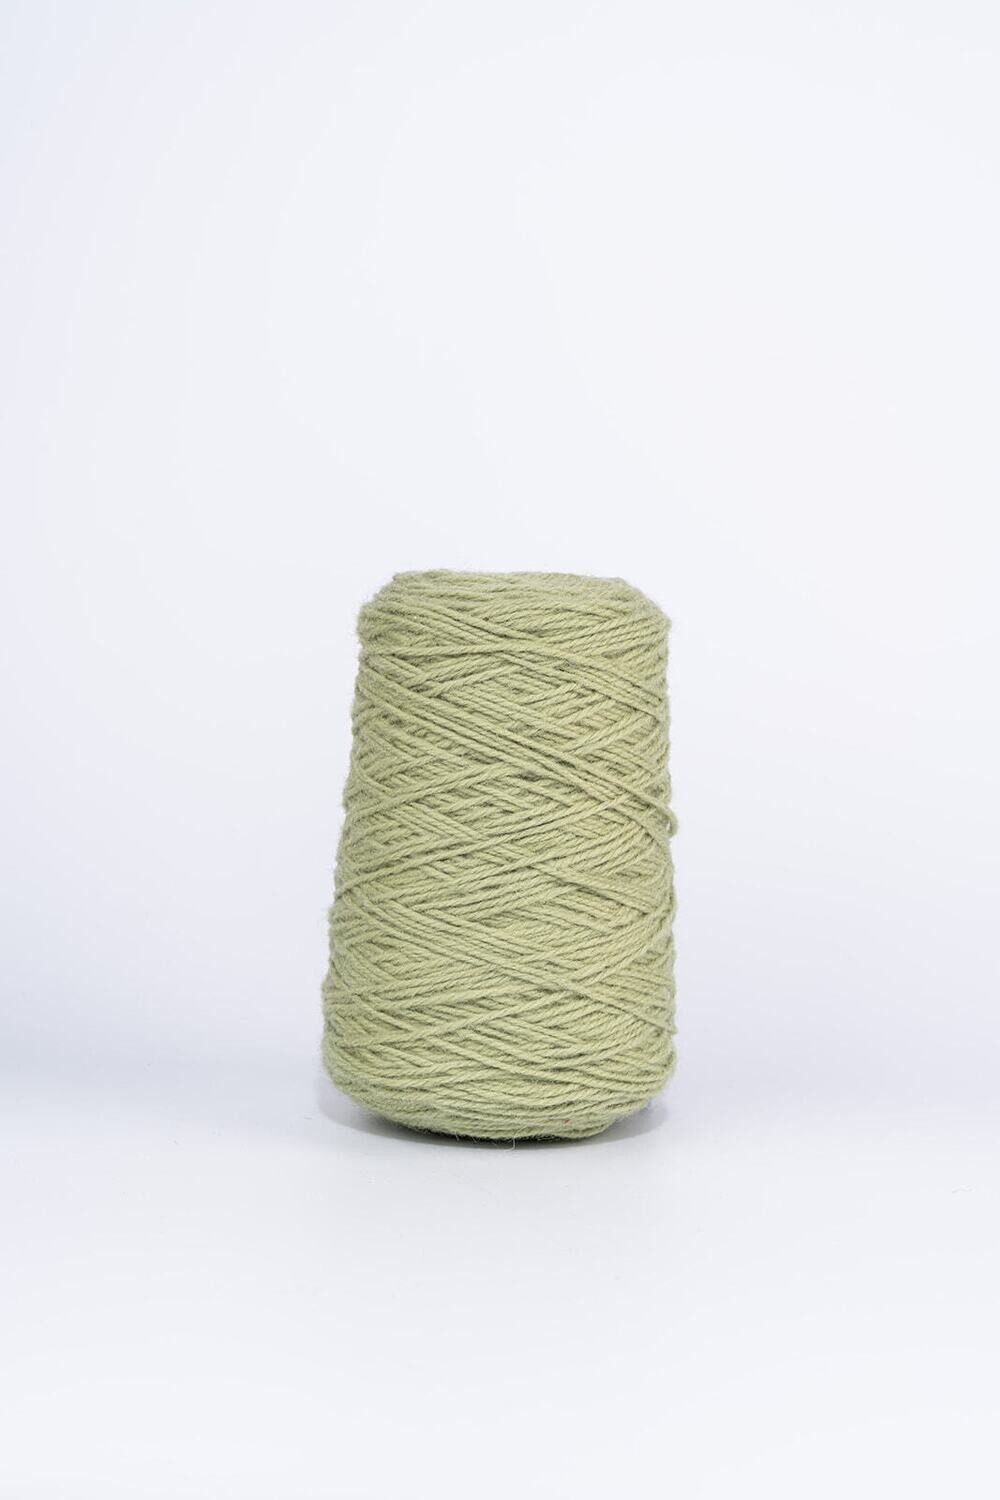 100% Wool Rug Yarn On Cones - Pickle Green